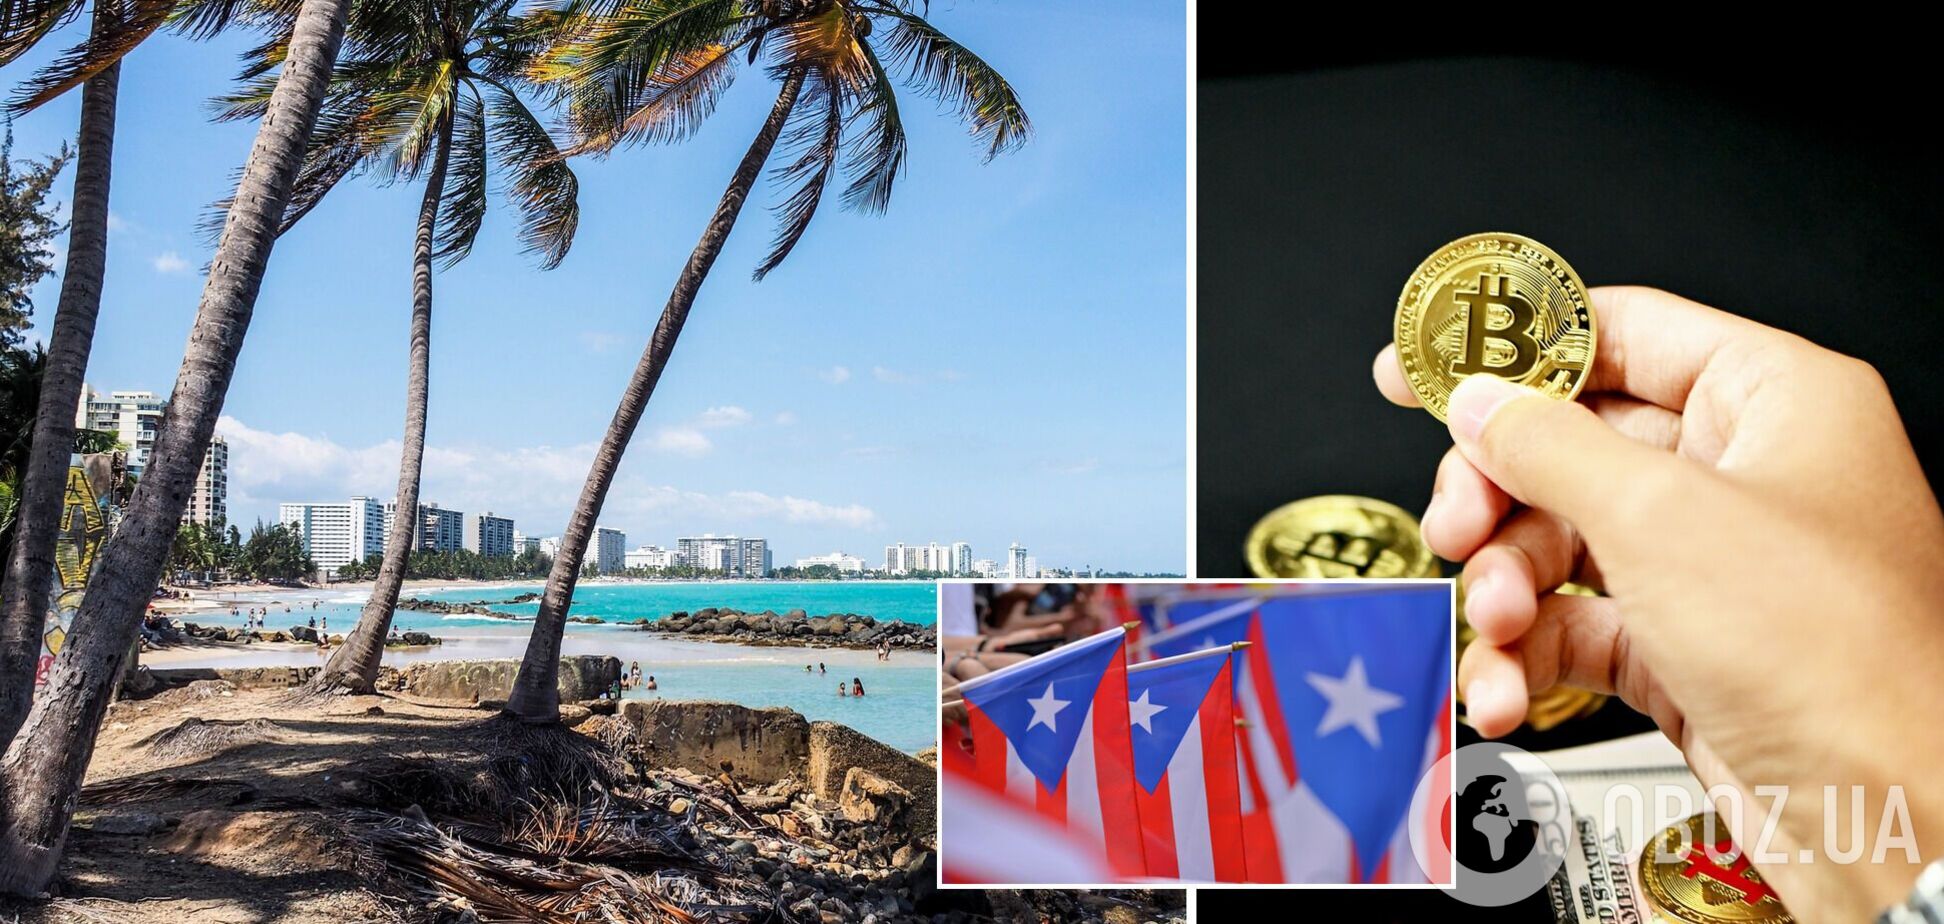 Пуэрто-Рико с распростертыми объятиями принимает критоинвесторов, но не все так безоблачно